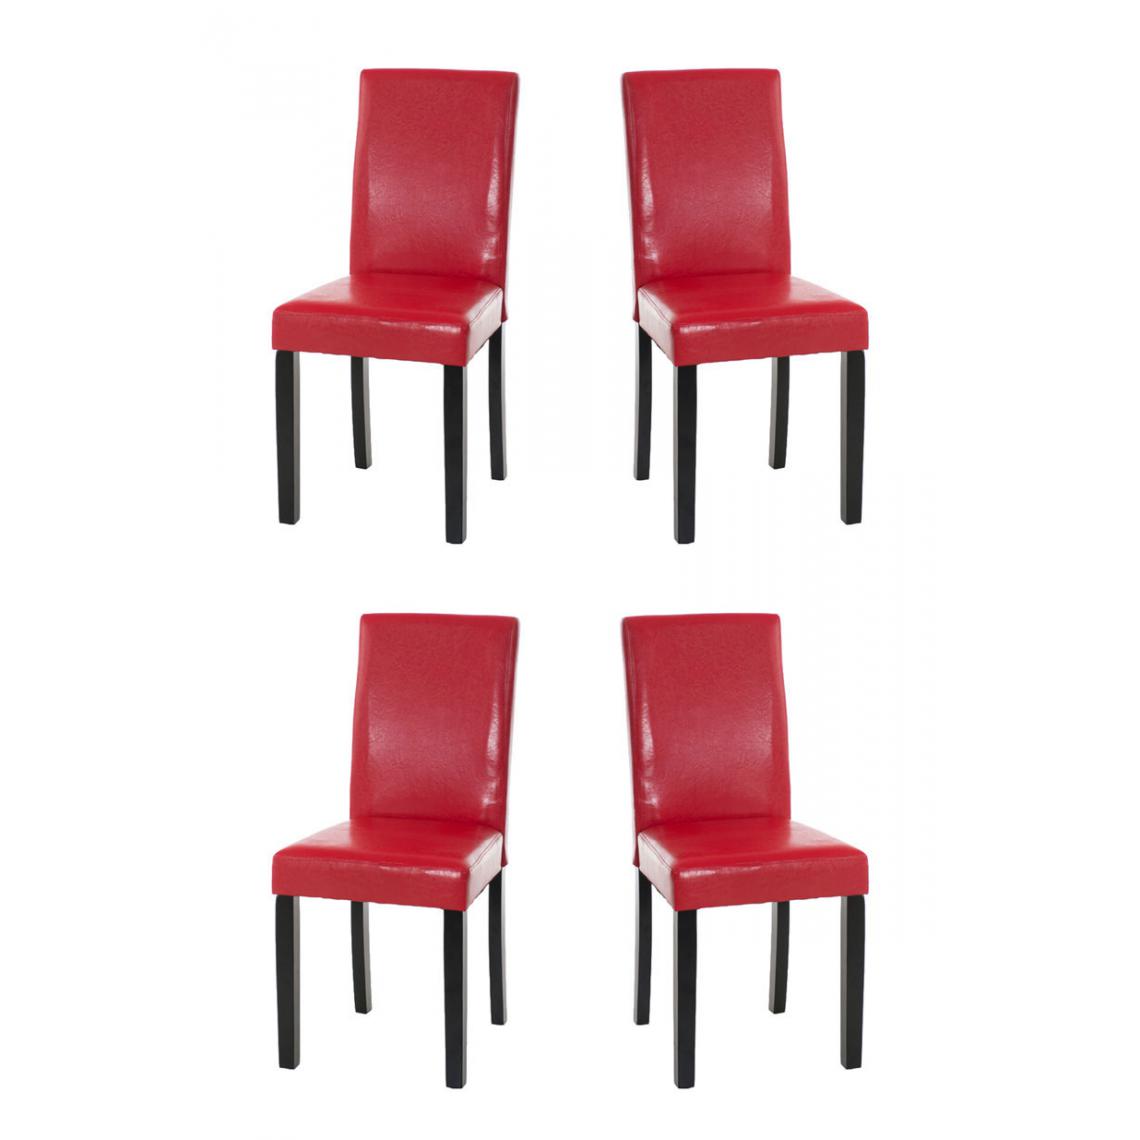 Icaverne - Splendide Lot de 4 chaises de salle à manger edition Rabat noir couleur rouge - Chaises